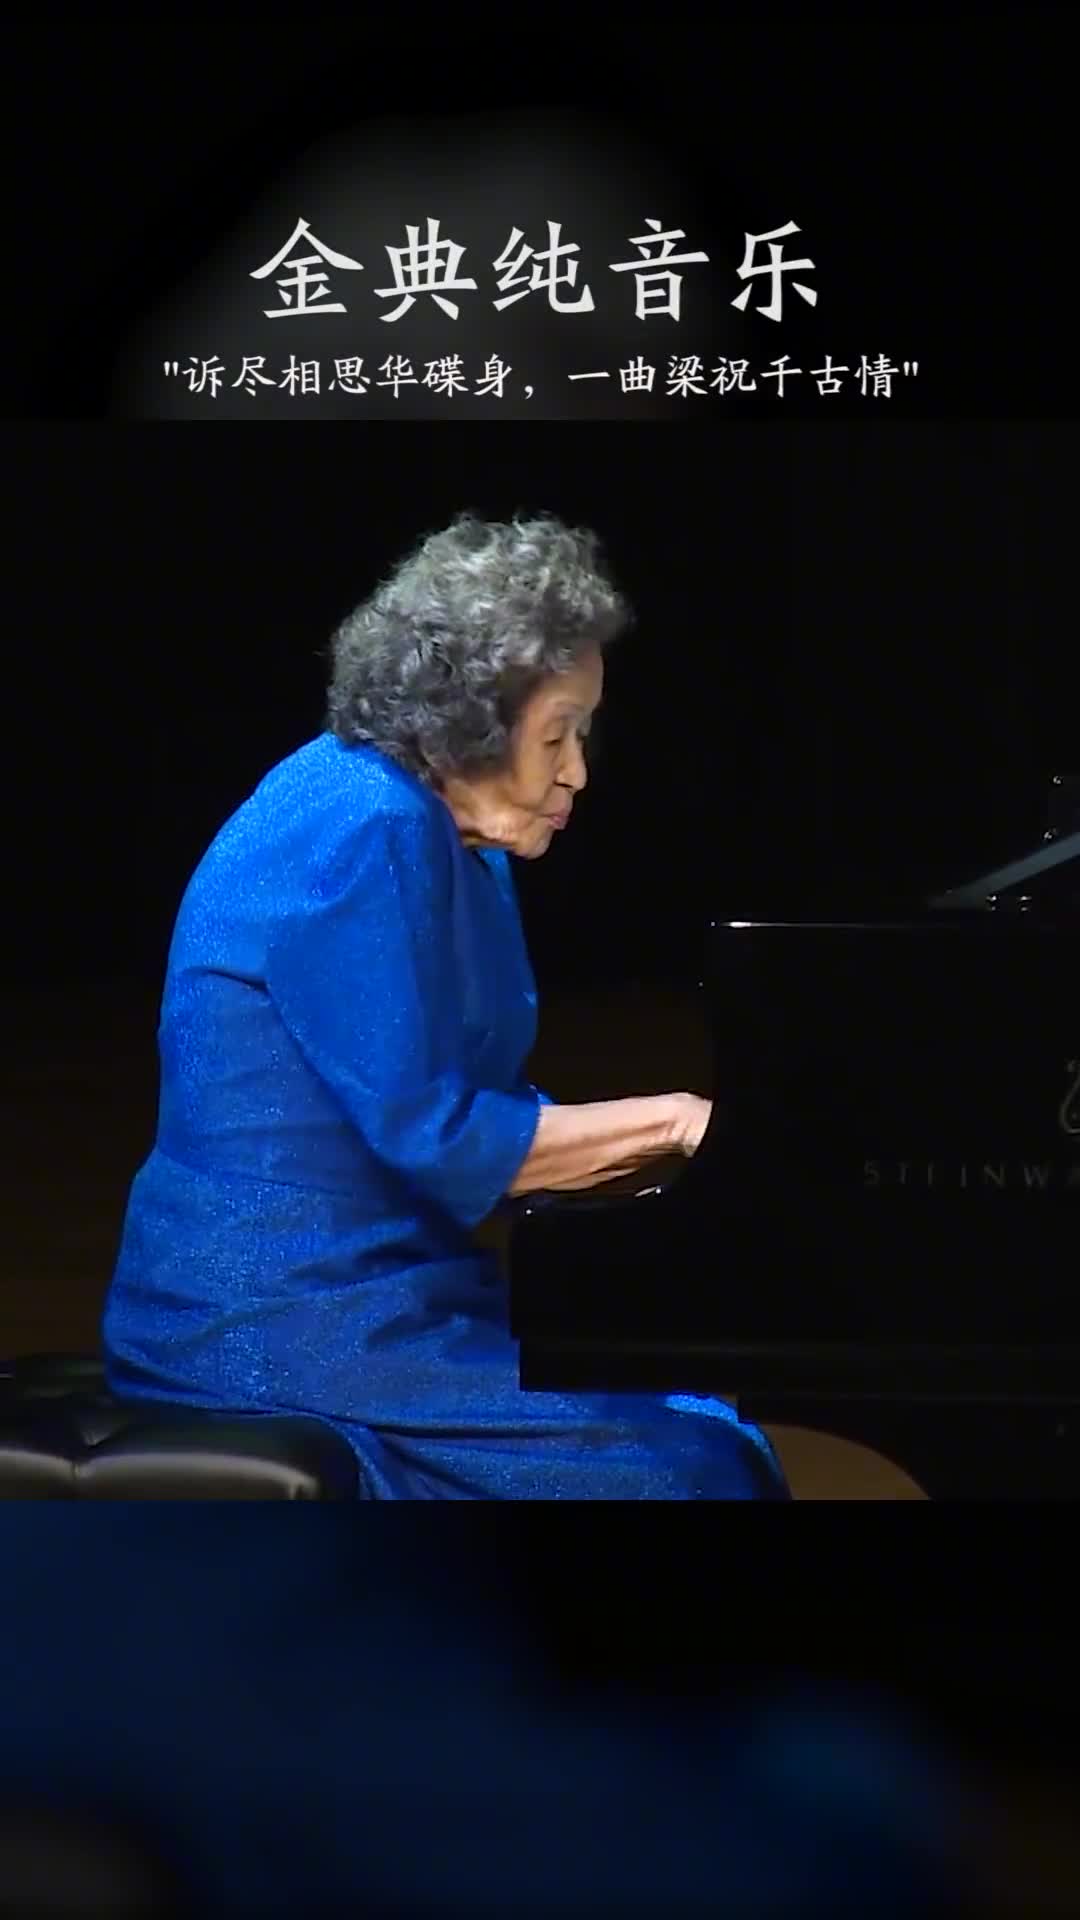 致敬中国第一代钢琴大师，巫漪丽先生！千古恩怨今犹在，红尘多少寂寞人！#梁祝